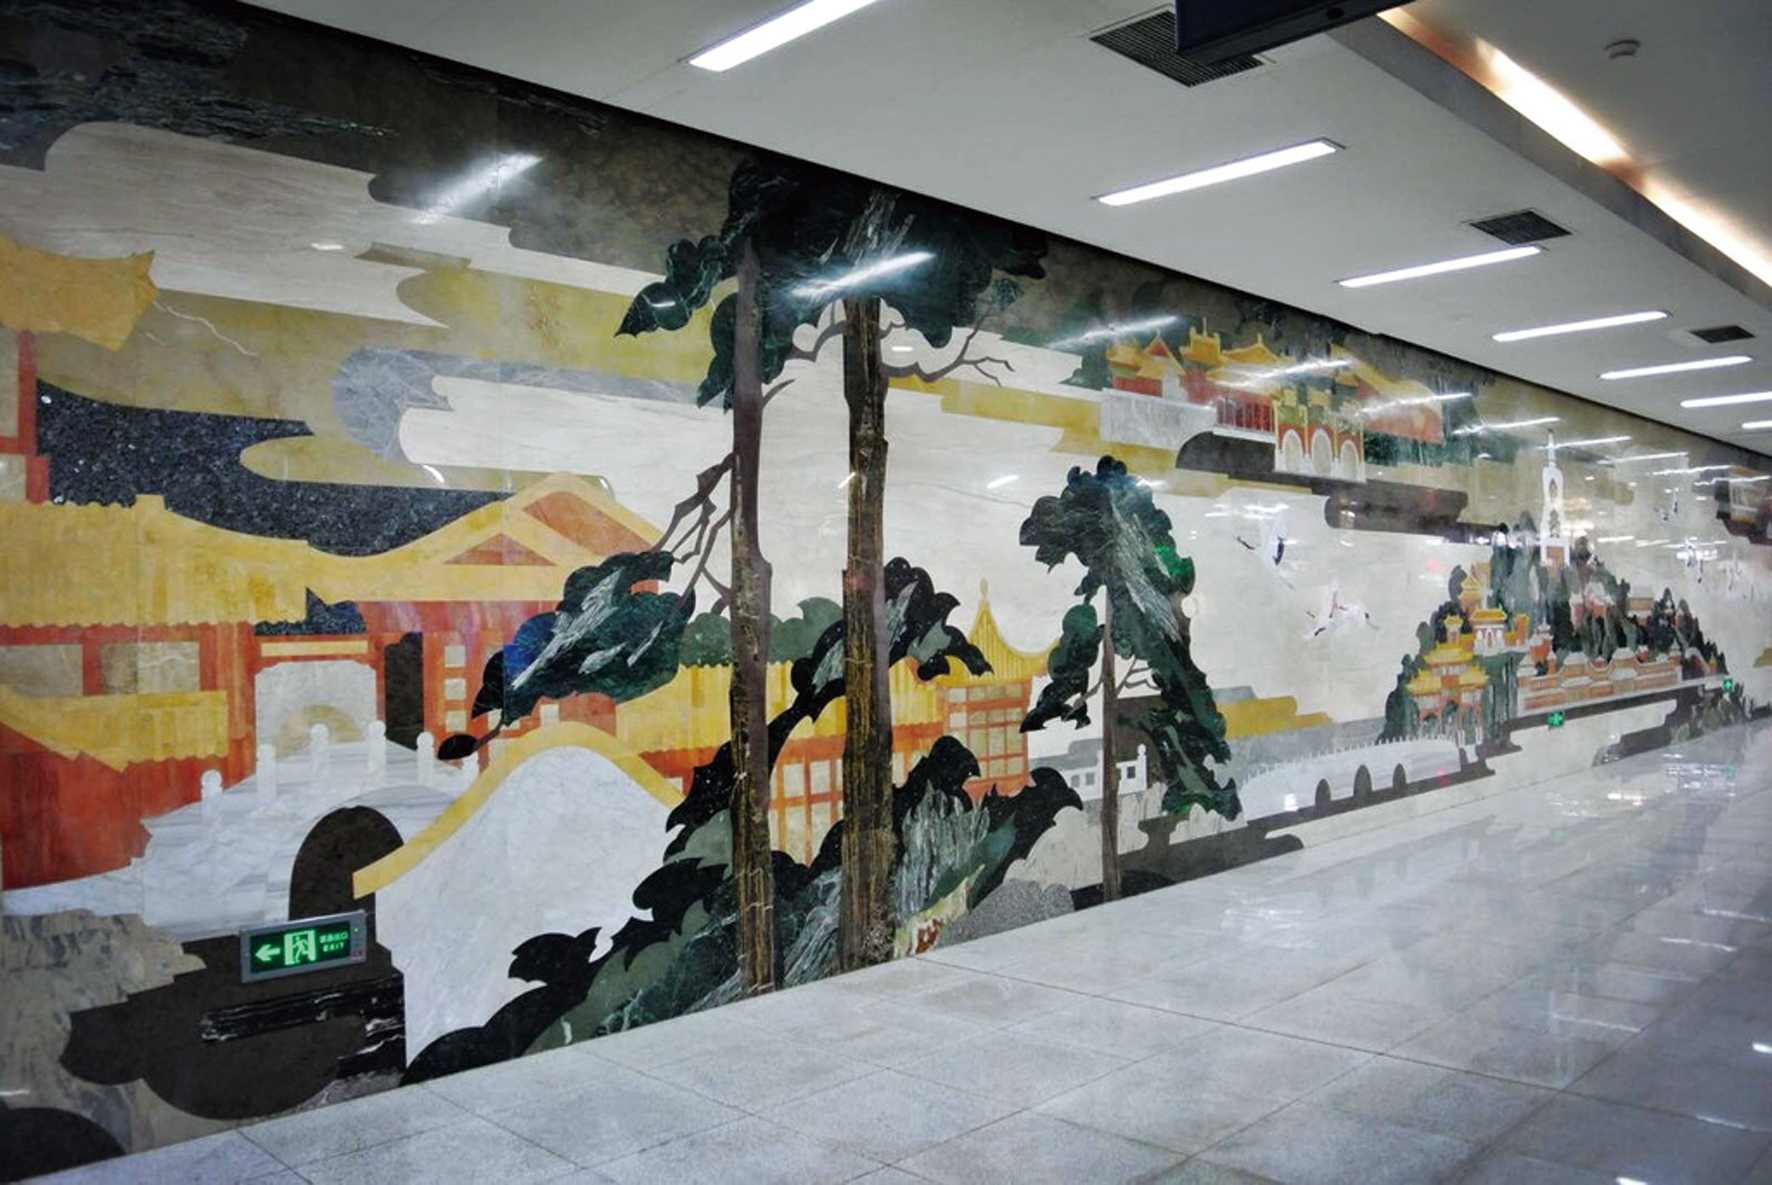 壁画:大众生活与城市美学的投影